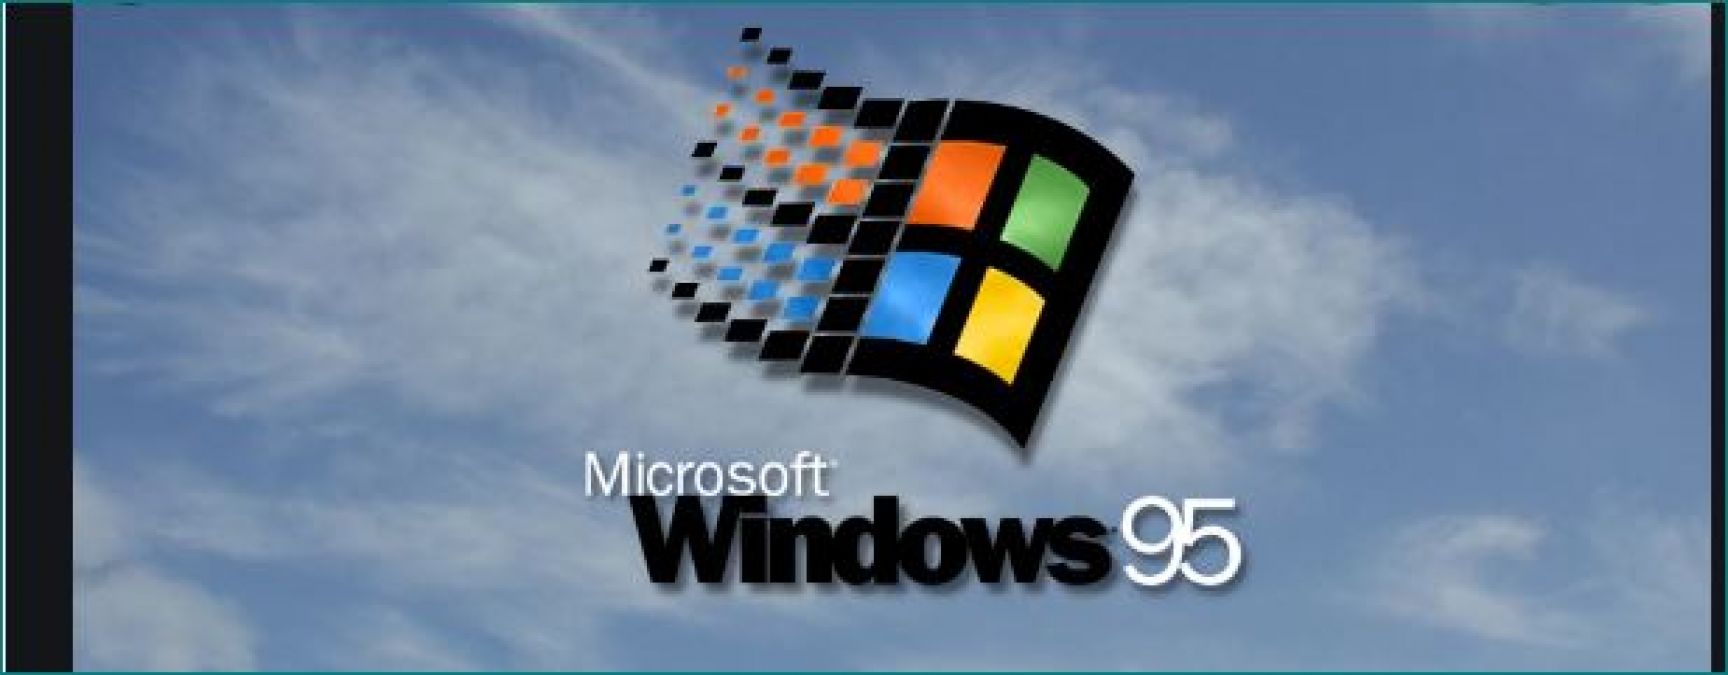 माइक्रोसॉफ्ट के प्रतिष्ठित सॉफ्टवेयर विंडोज 95 ने पूरे किये 25 साल